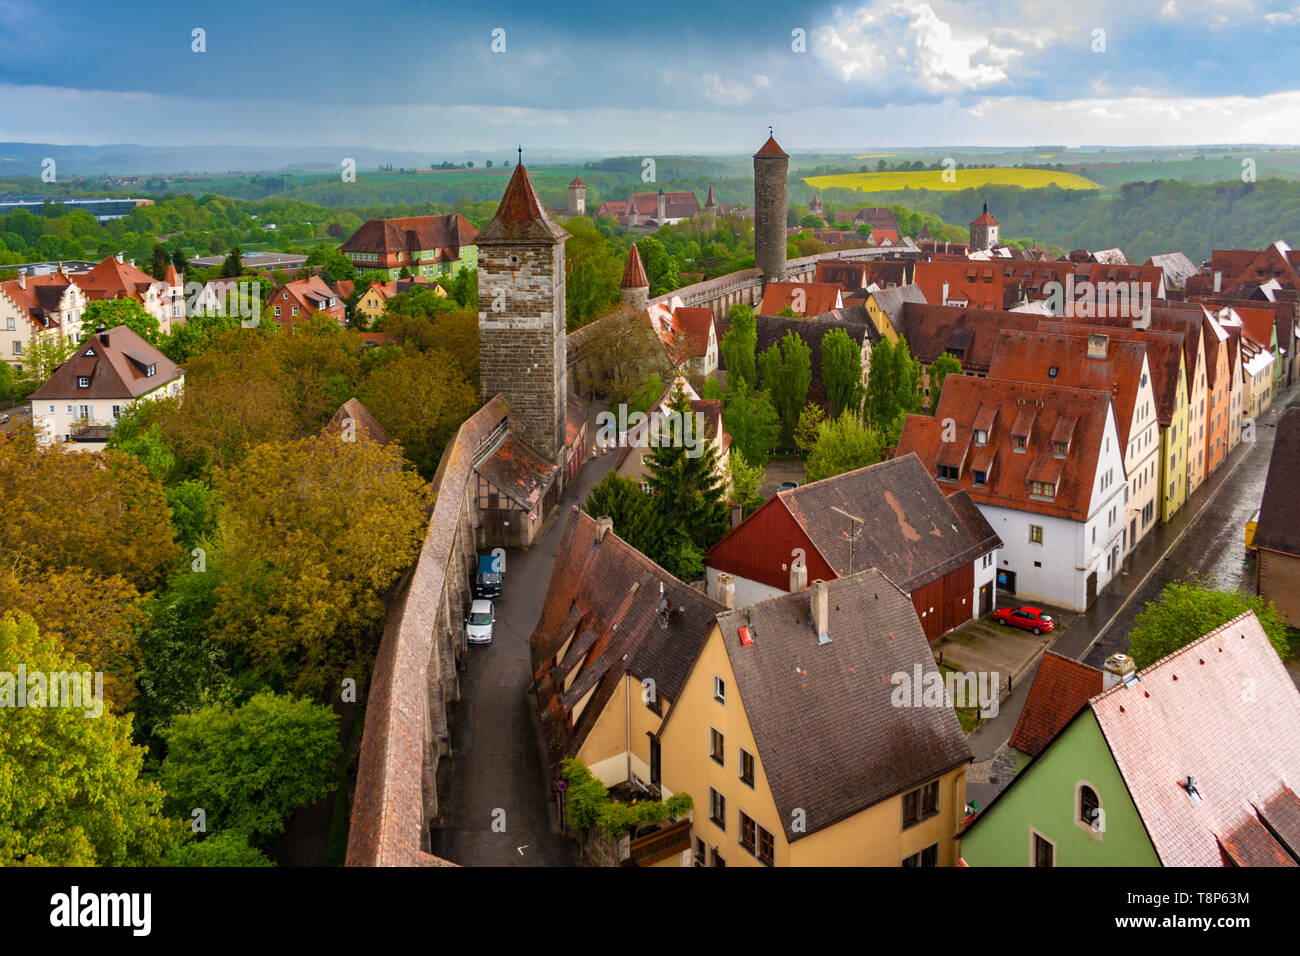 Großes Luftbild von Rothenburg o.d. Tauber, einer Stadt in der Region Franken in Bayern, Deutschland. Die mittelalterliche Stadtbefestigung zeigt die äußere... Stockfoto